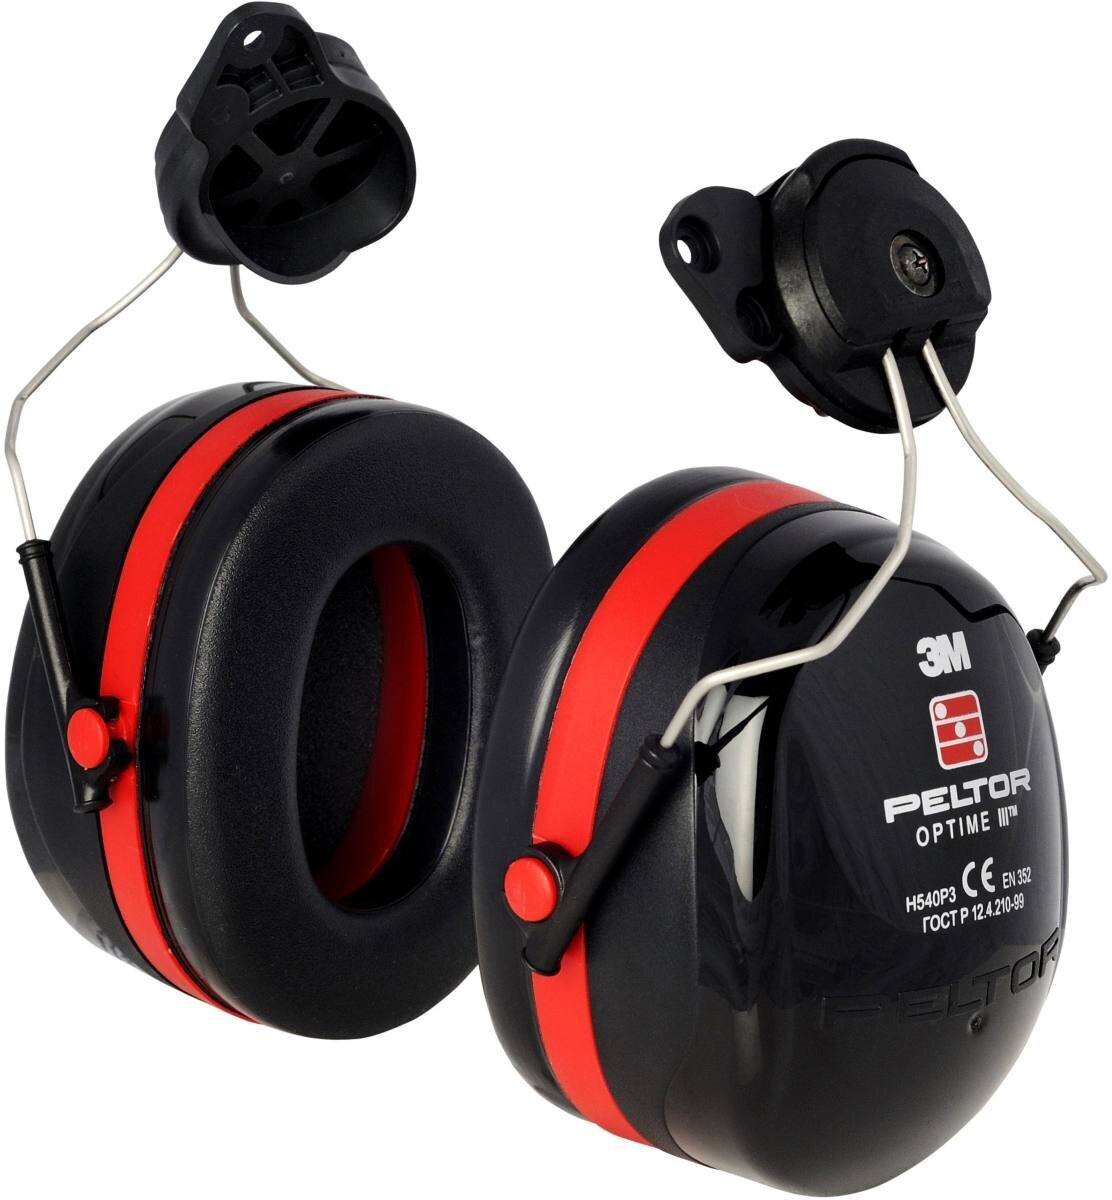 3M PELTOR Casque antibruit Optime III, fixation au casque, noir, avec adaptateur de casque, SNR=34 dB, H540P3H-413-SV